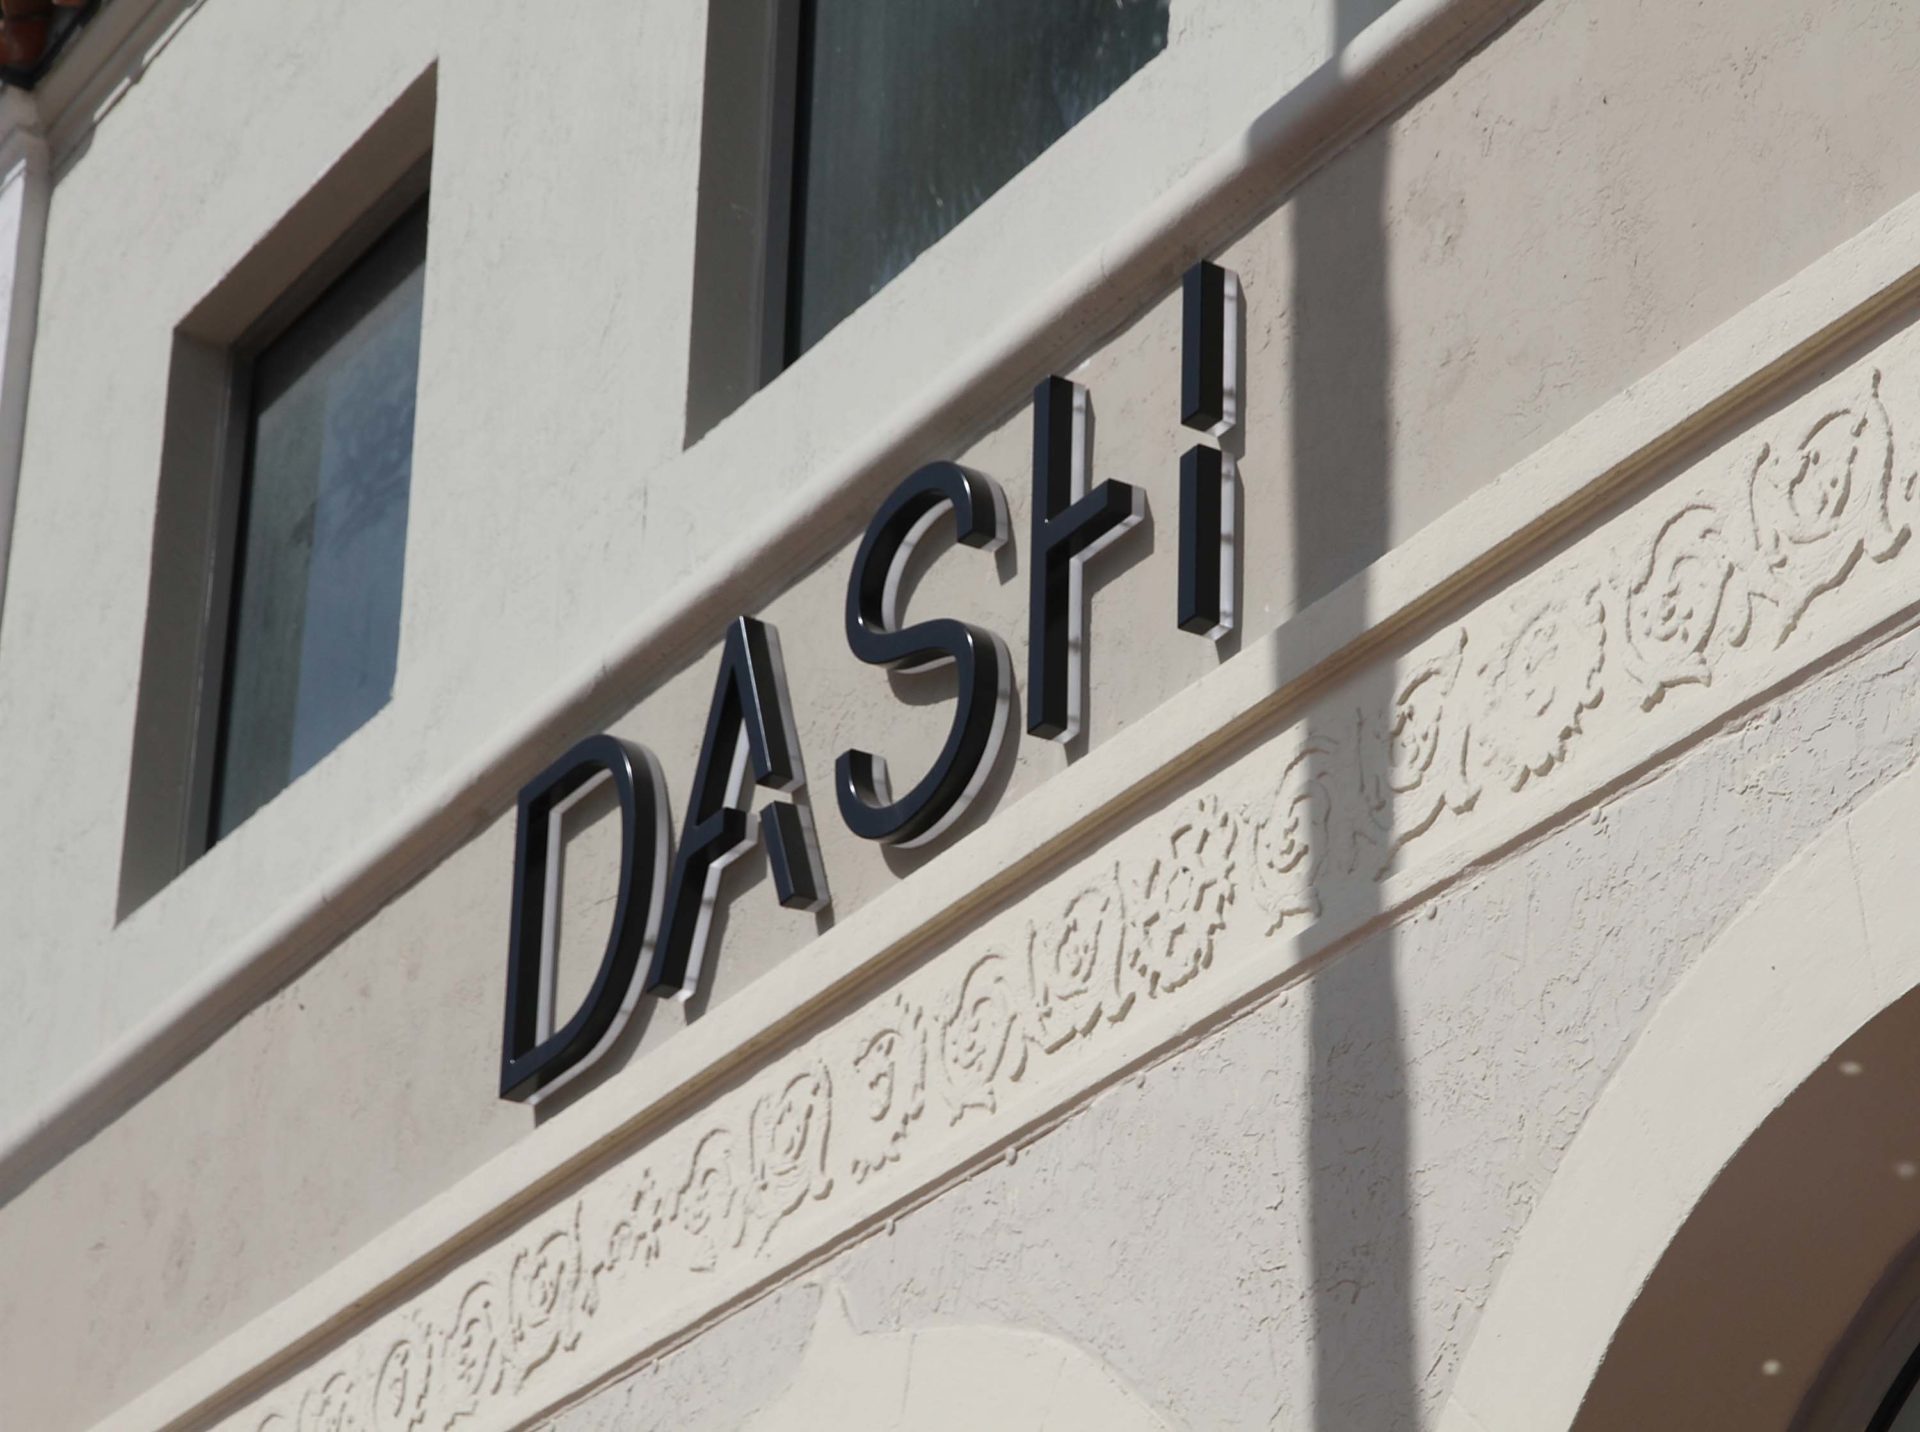 The Kardashian Family Celebrates the Grand Opening of DASH Miami Beach